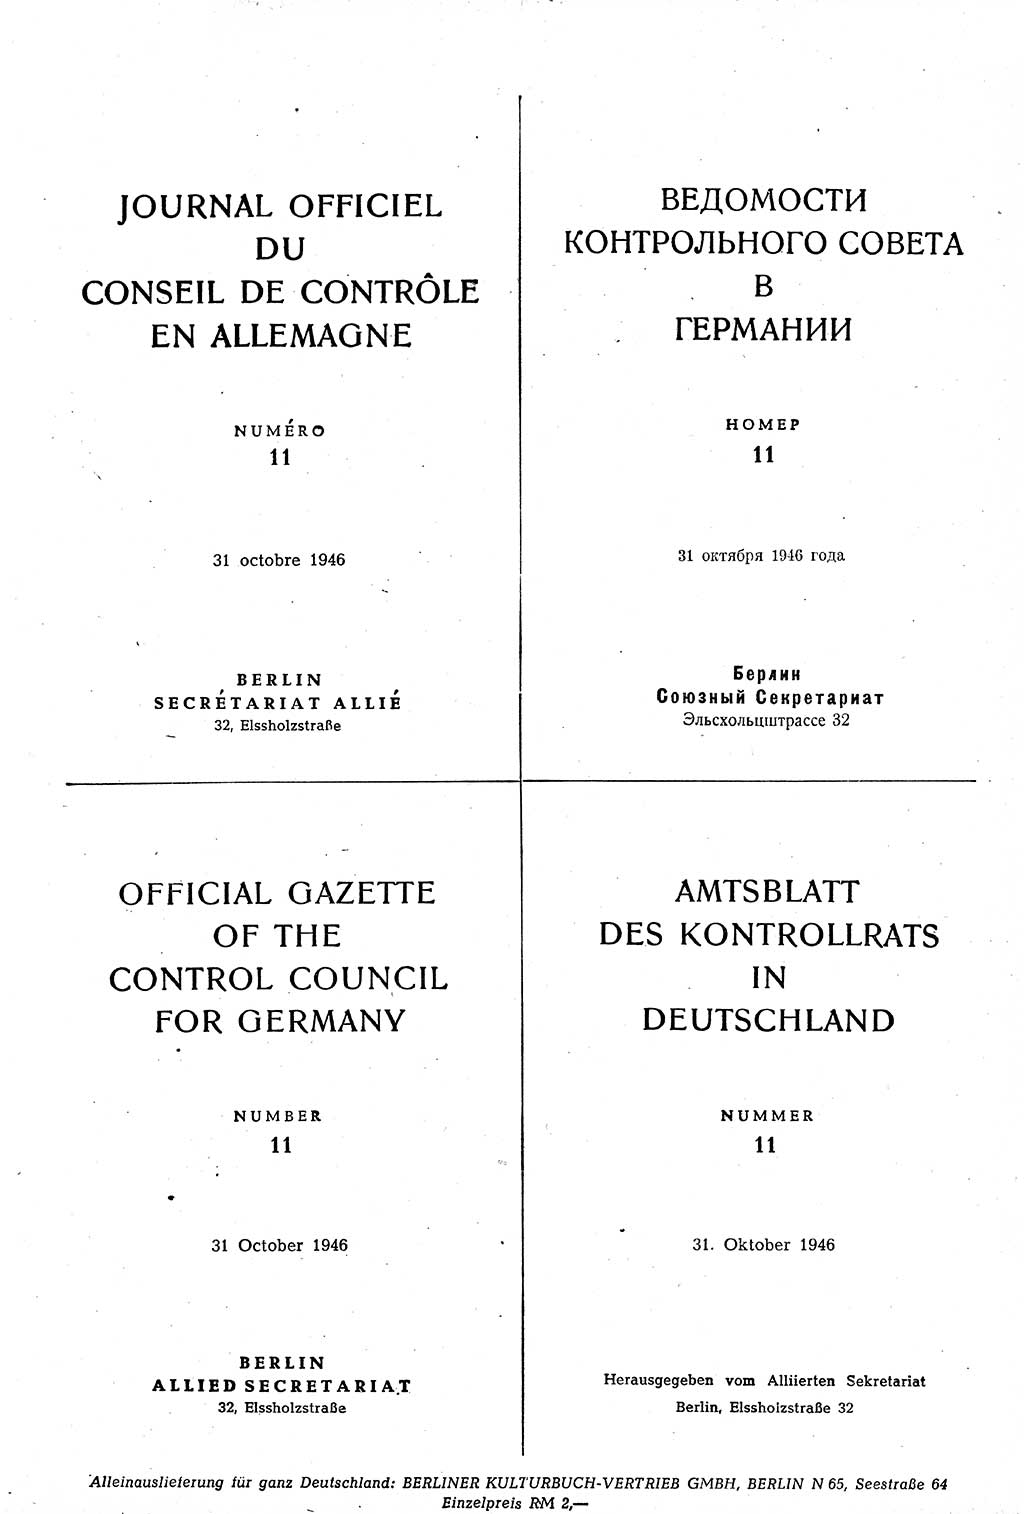 Amtsblatt des Kontrollrats (ABlKR) in Deutschland 1946, Seite 178 (ABlKR Dtl. 1946, S. 178)